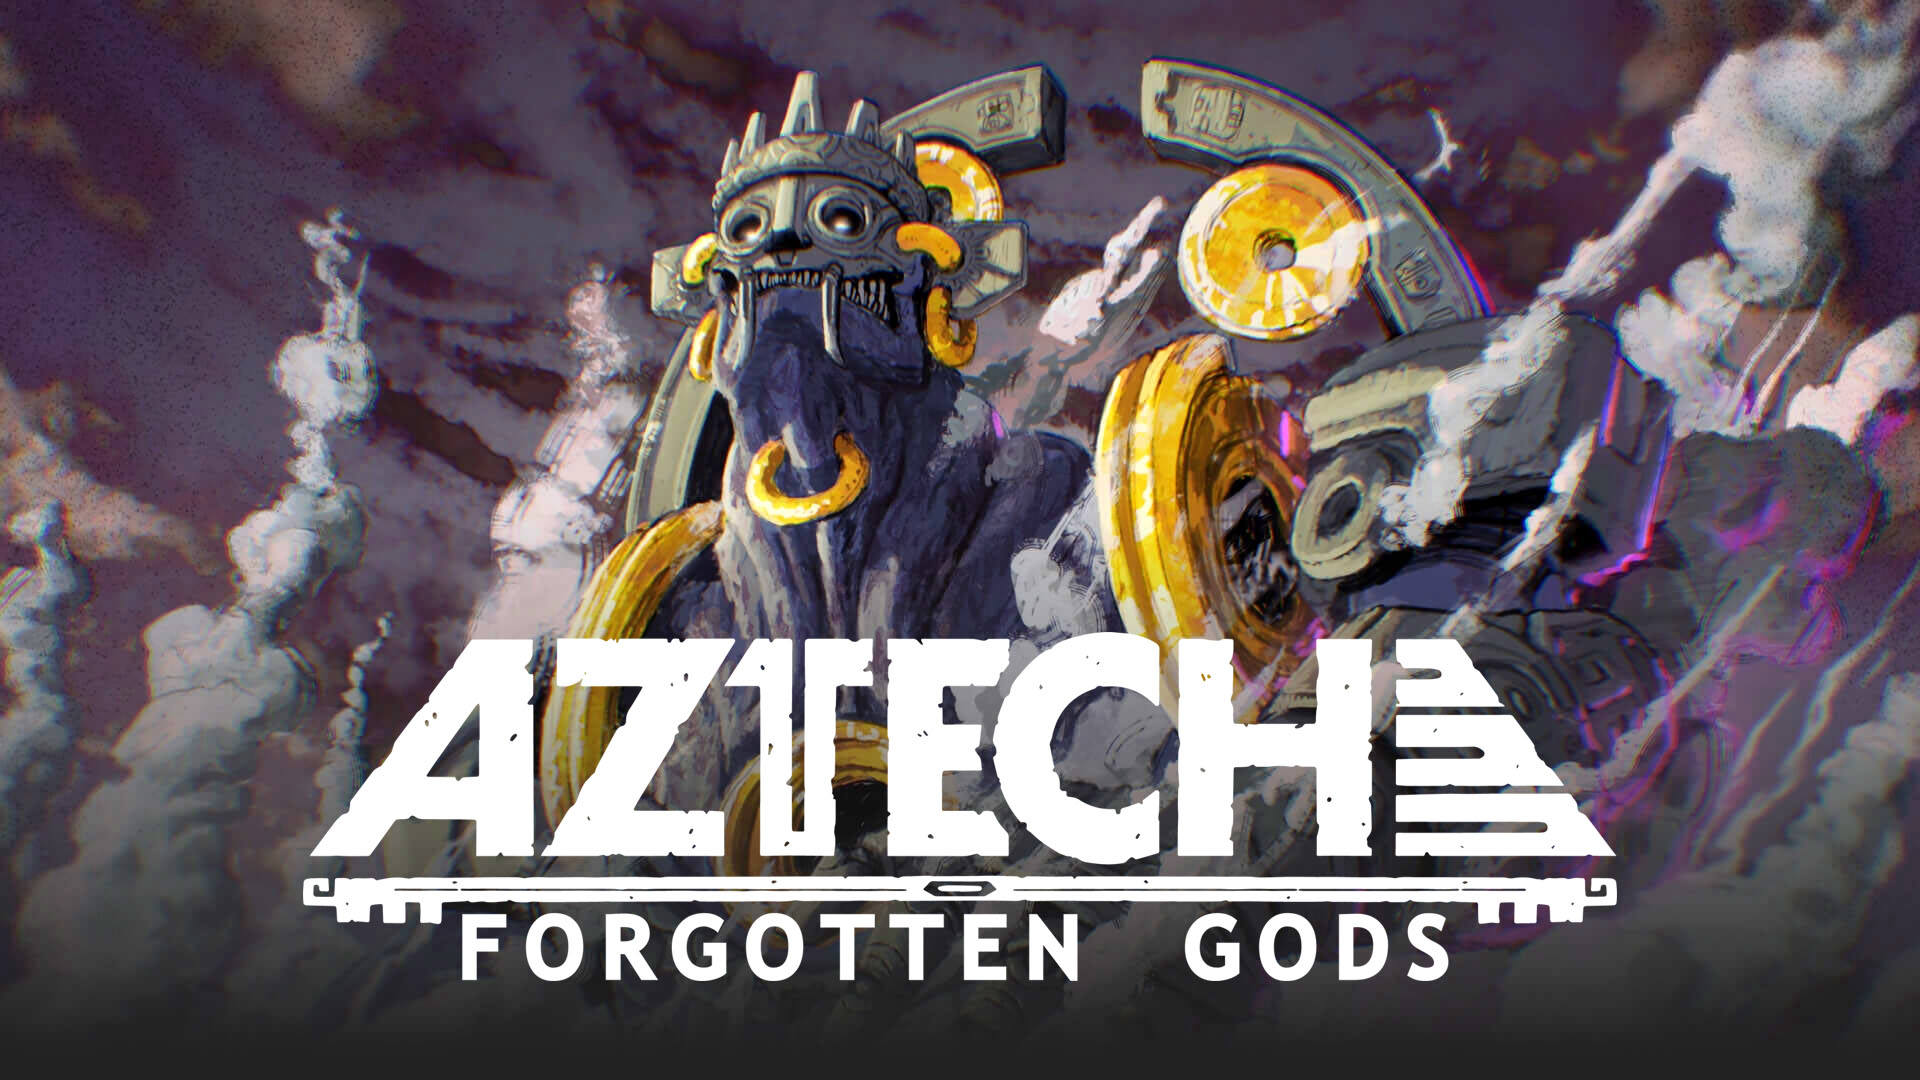 Zapomniani bogowie Aztechu 04 15 21 1